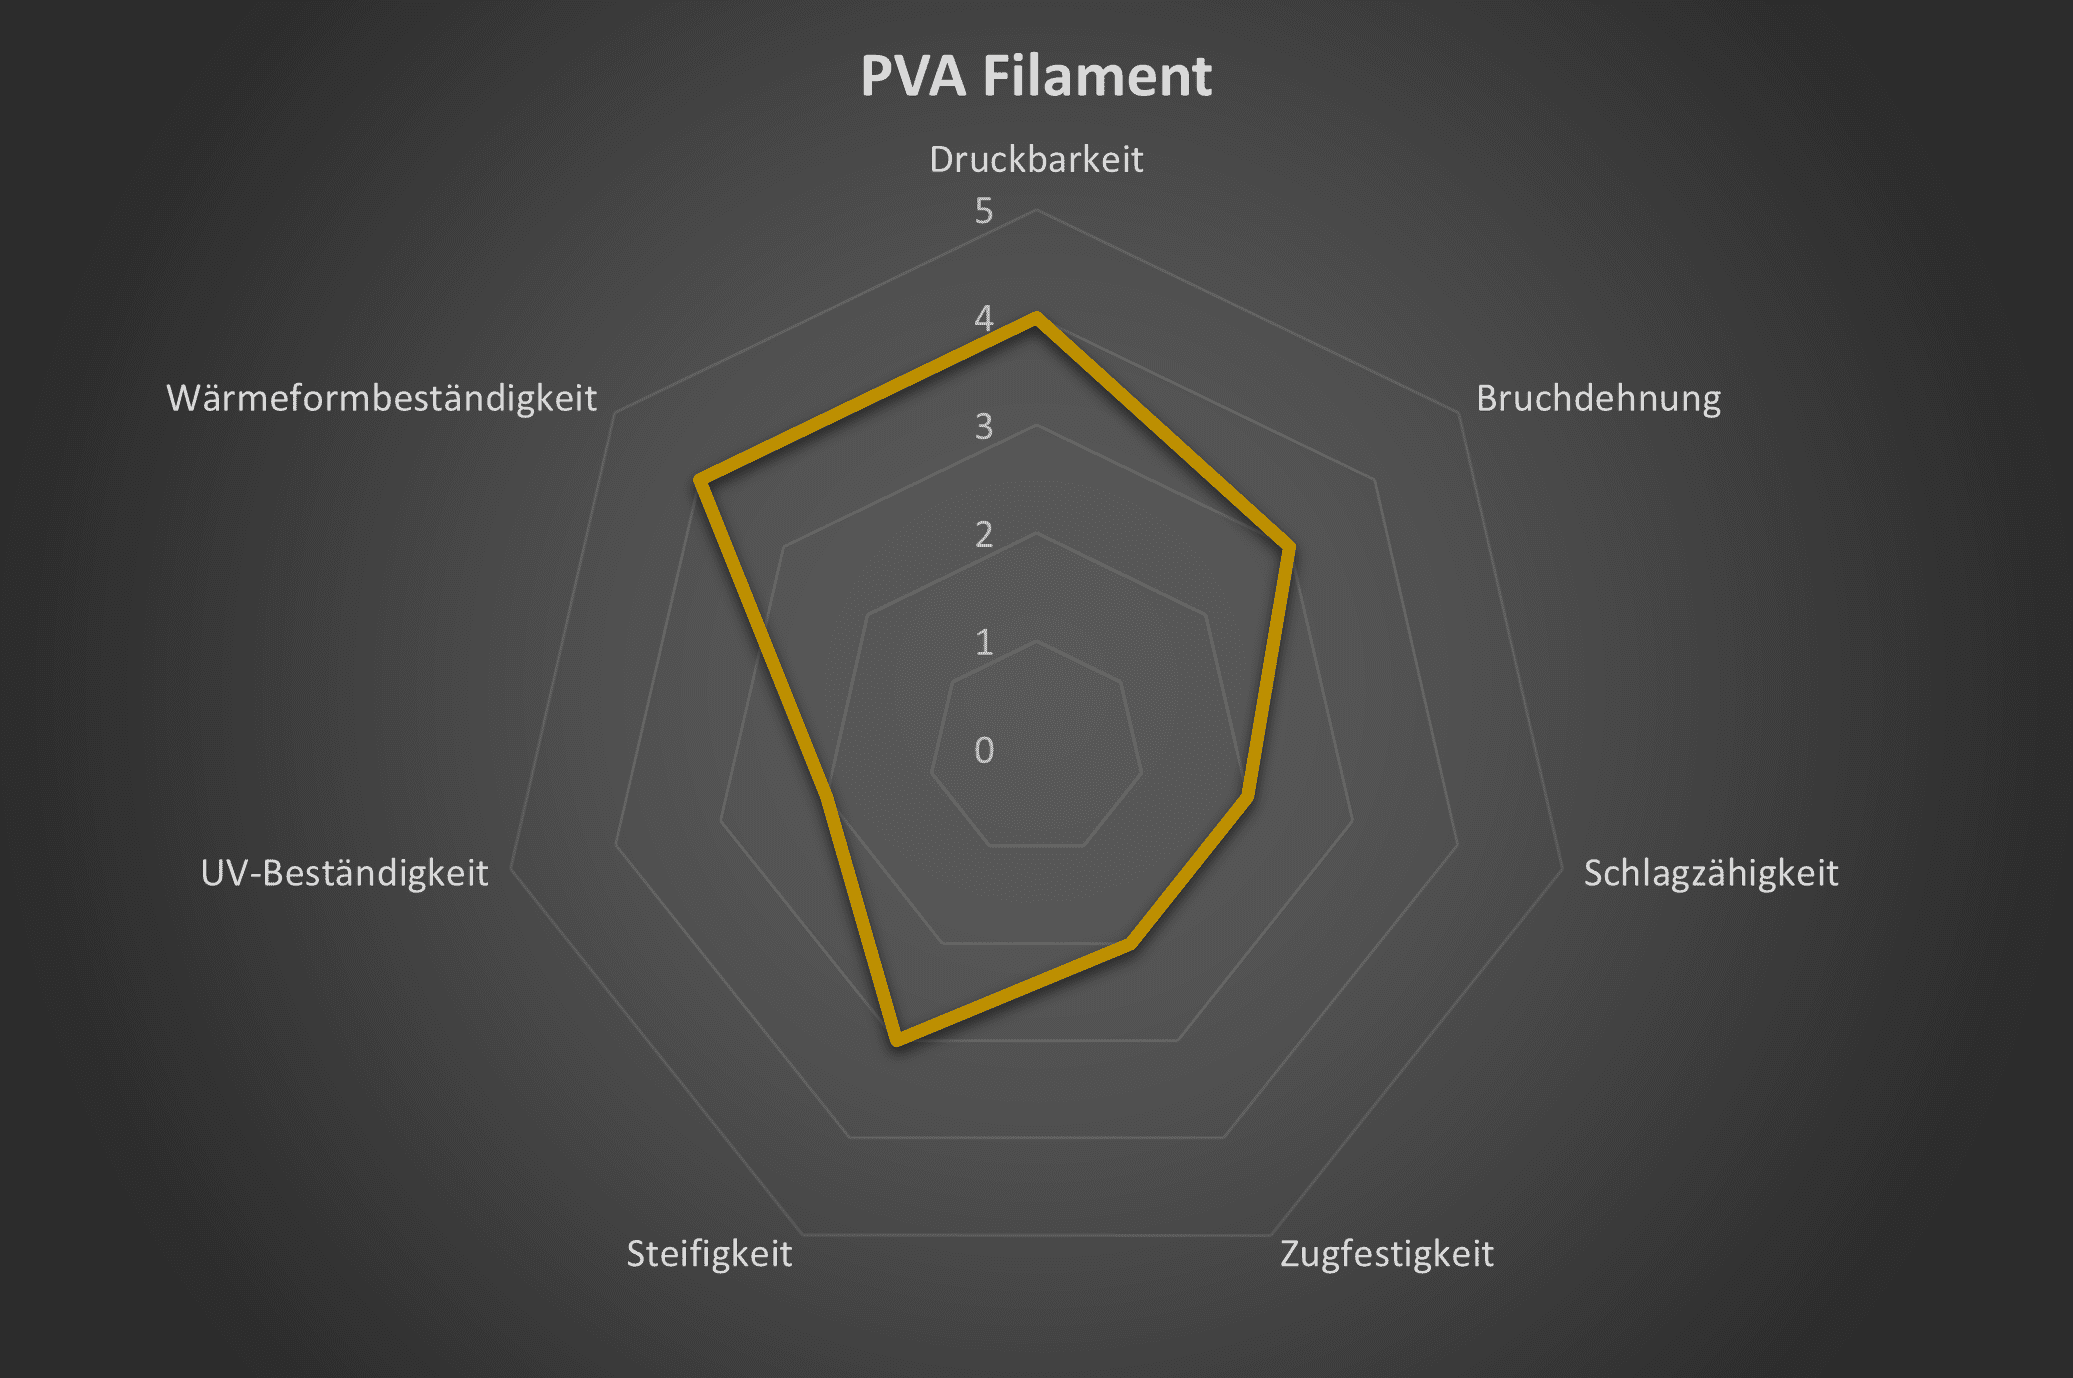 Spinnendiagramm mit den technischen eigenschaften von PVA Filament